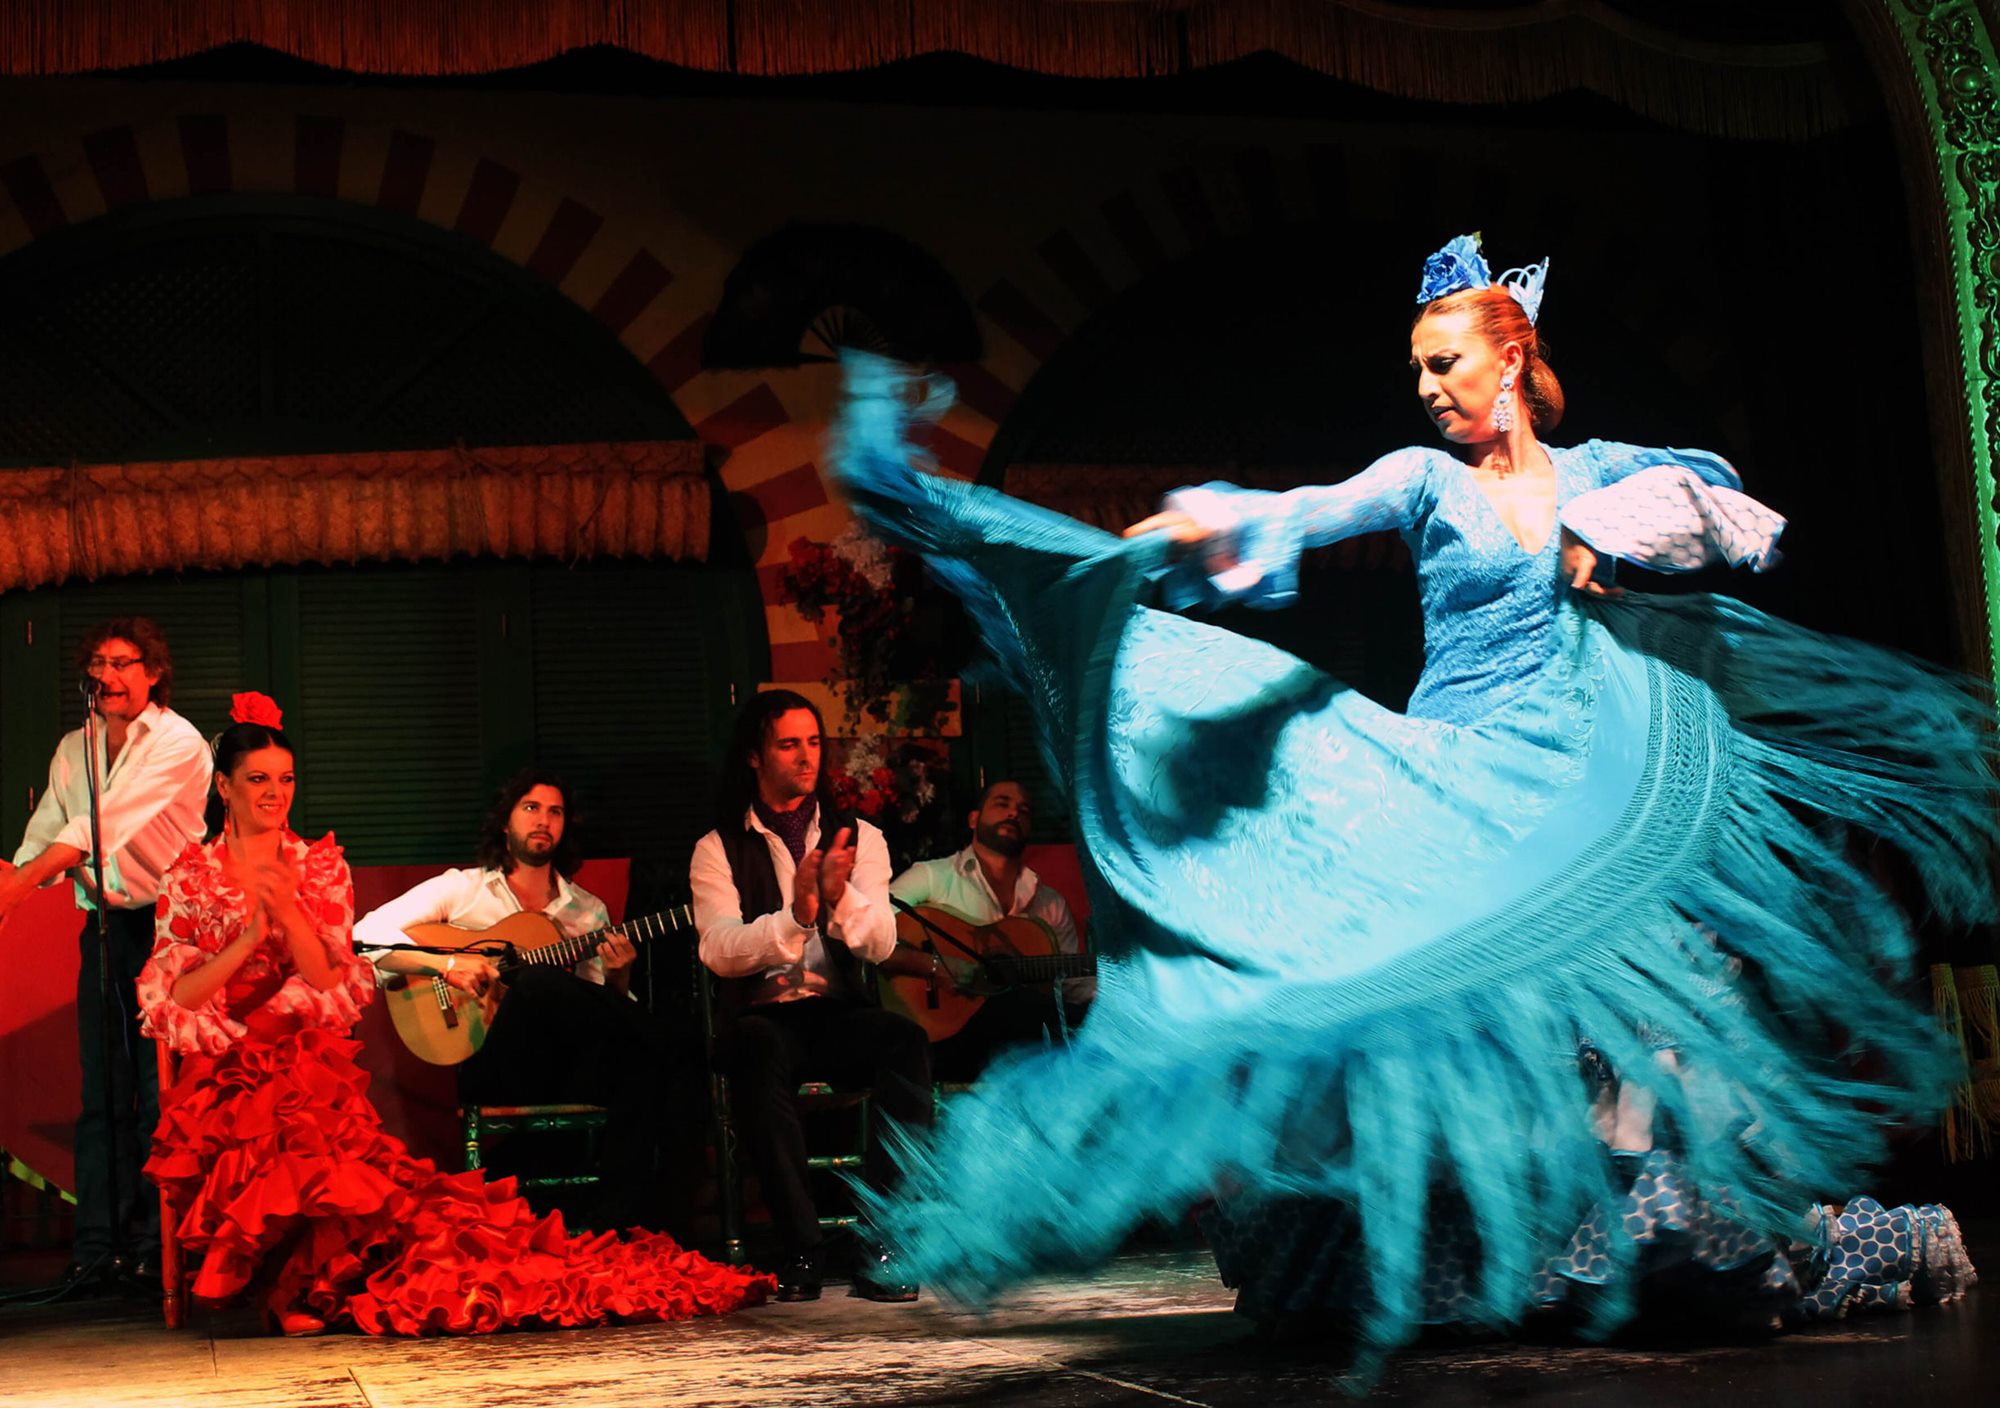 acheter réservations réserver visites guidées tours billets visiter spectacle show Soirée Flamenco à Séville